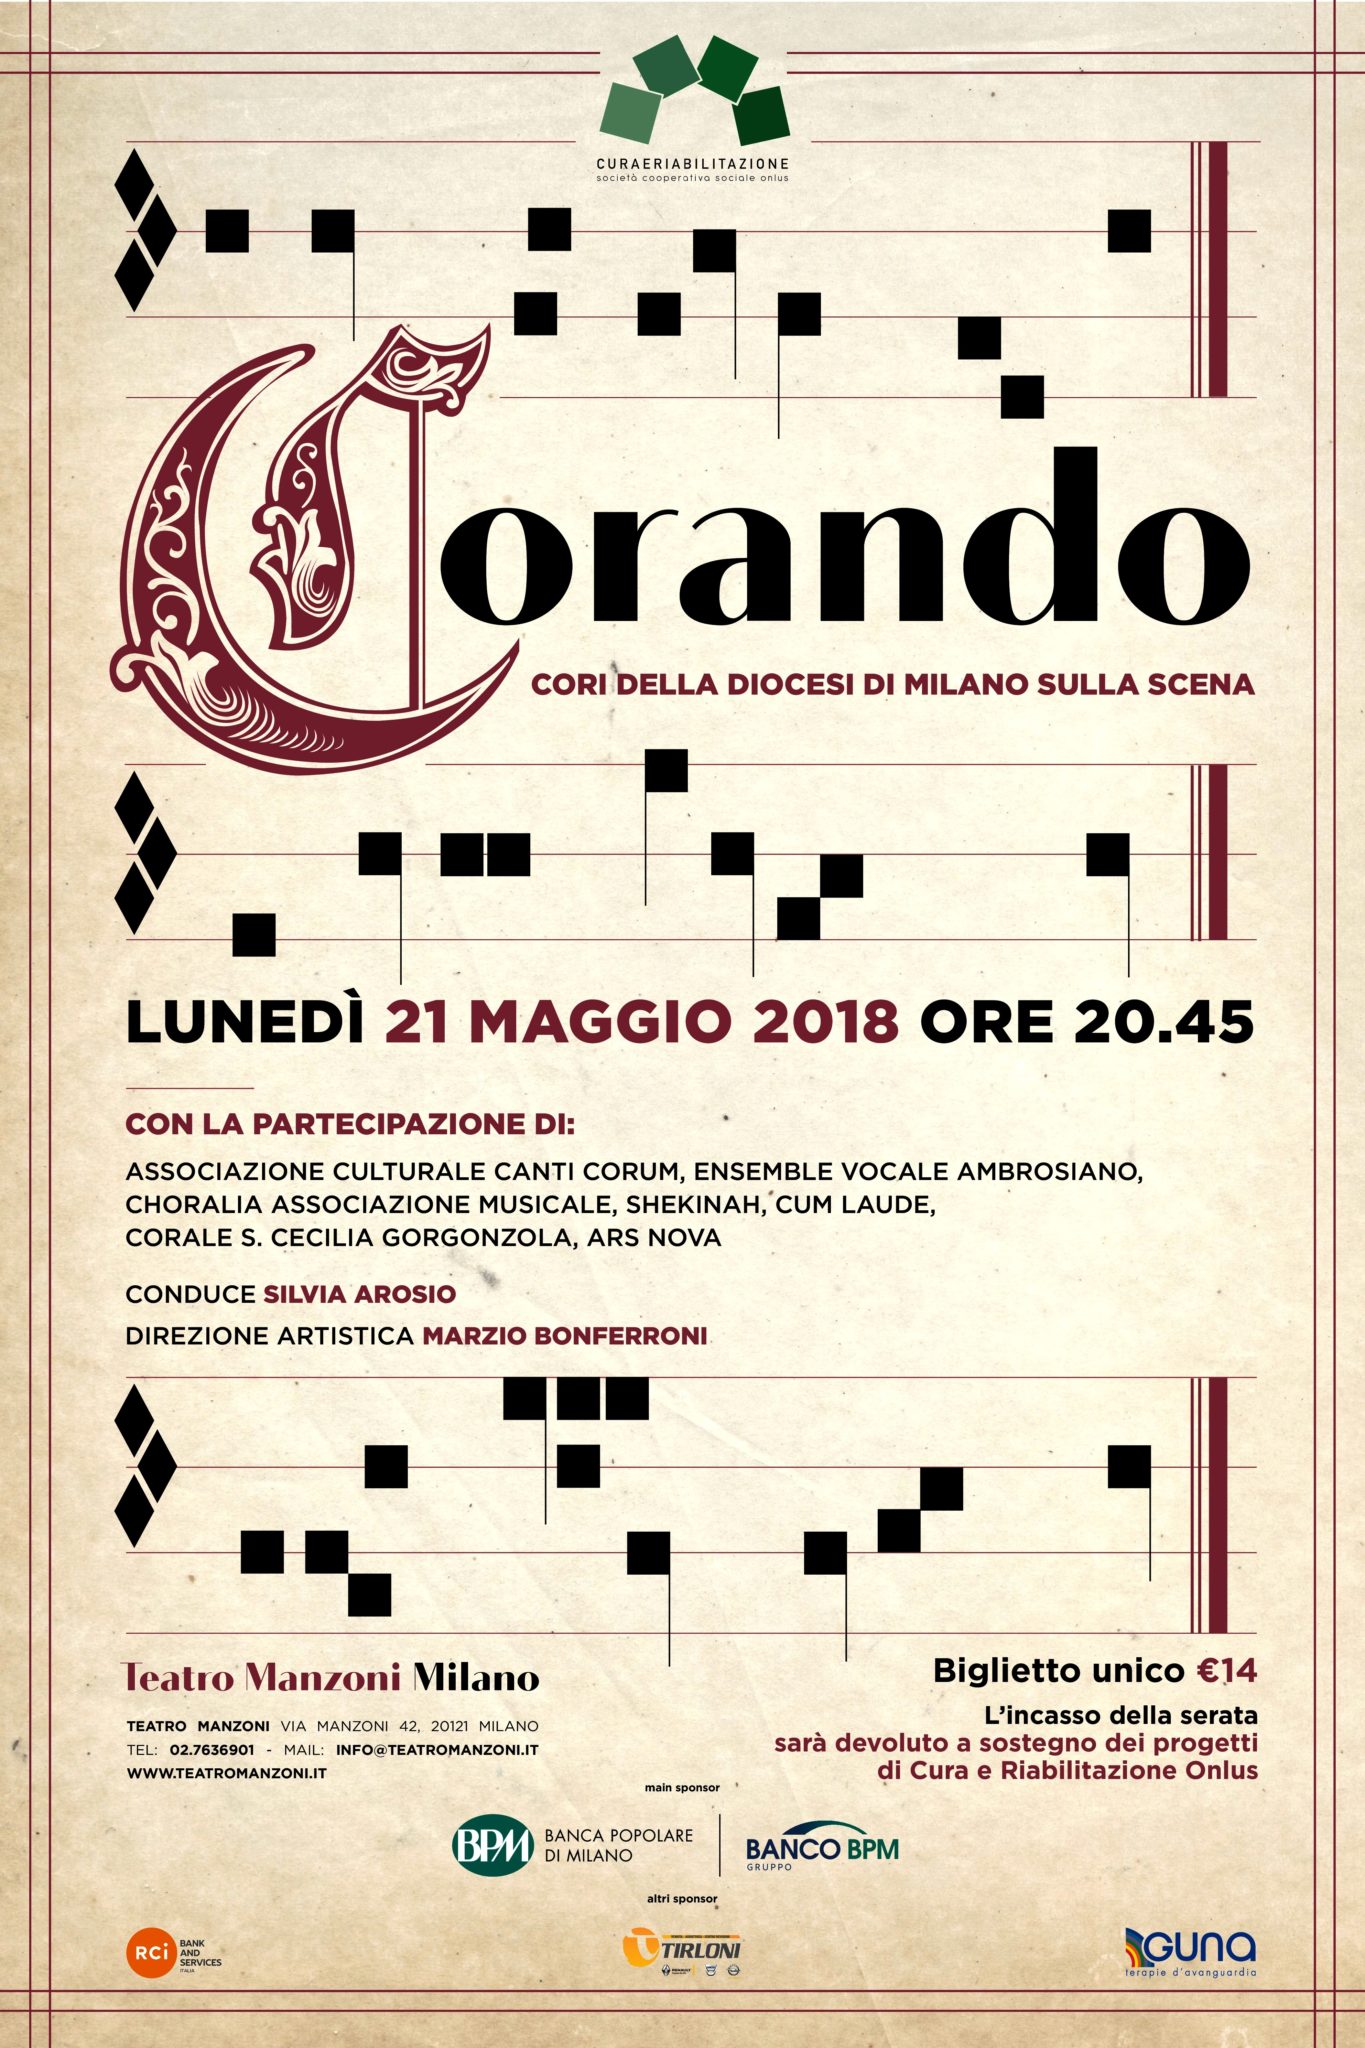 “CORANDO I cori con il cuore” al Teatro Manzoni di Milano